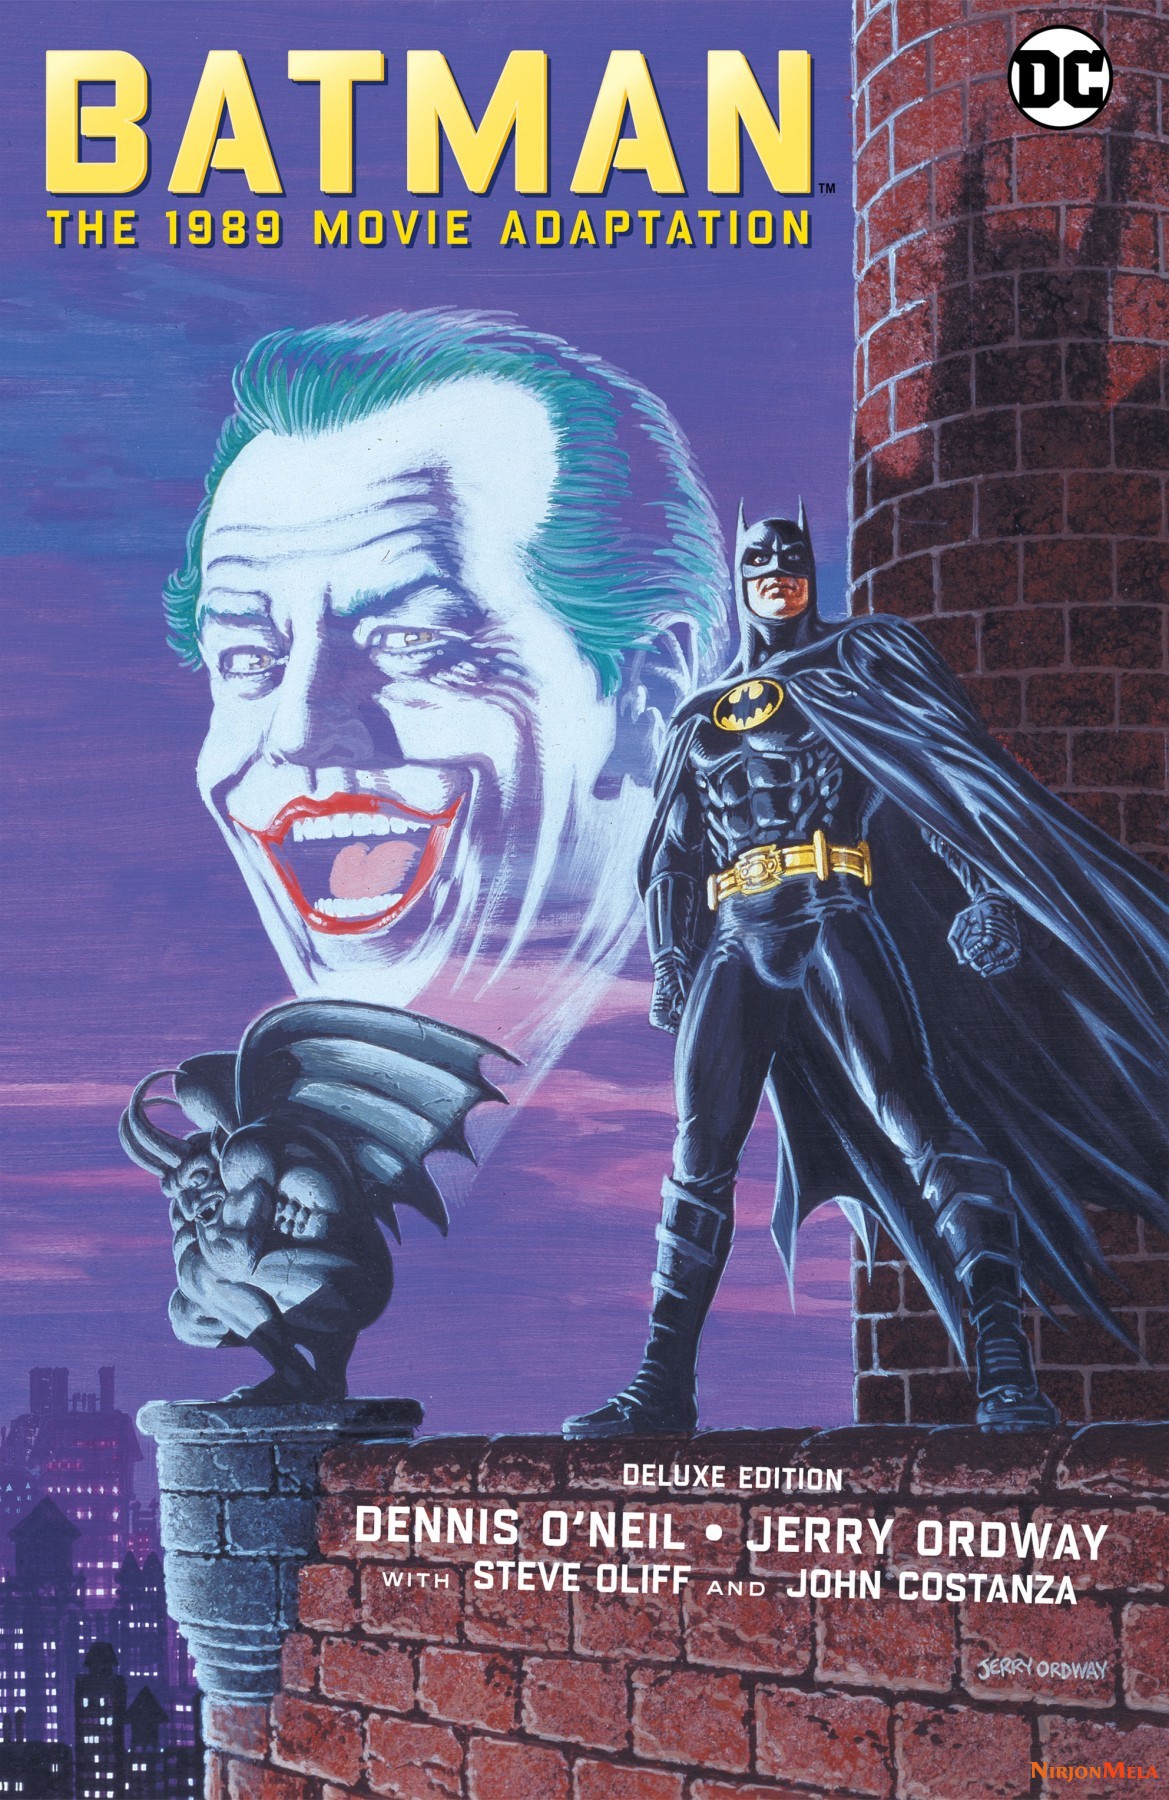 Batman---The-1989-Movie-Adaptation-Deluxe-Edition-000cf1e185b9e0c3c11.jpg